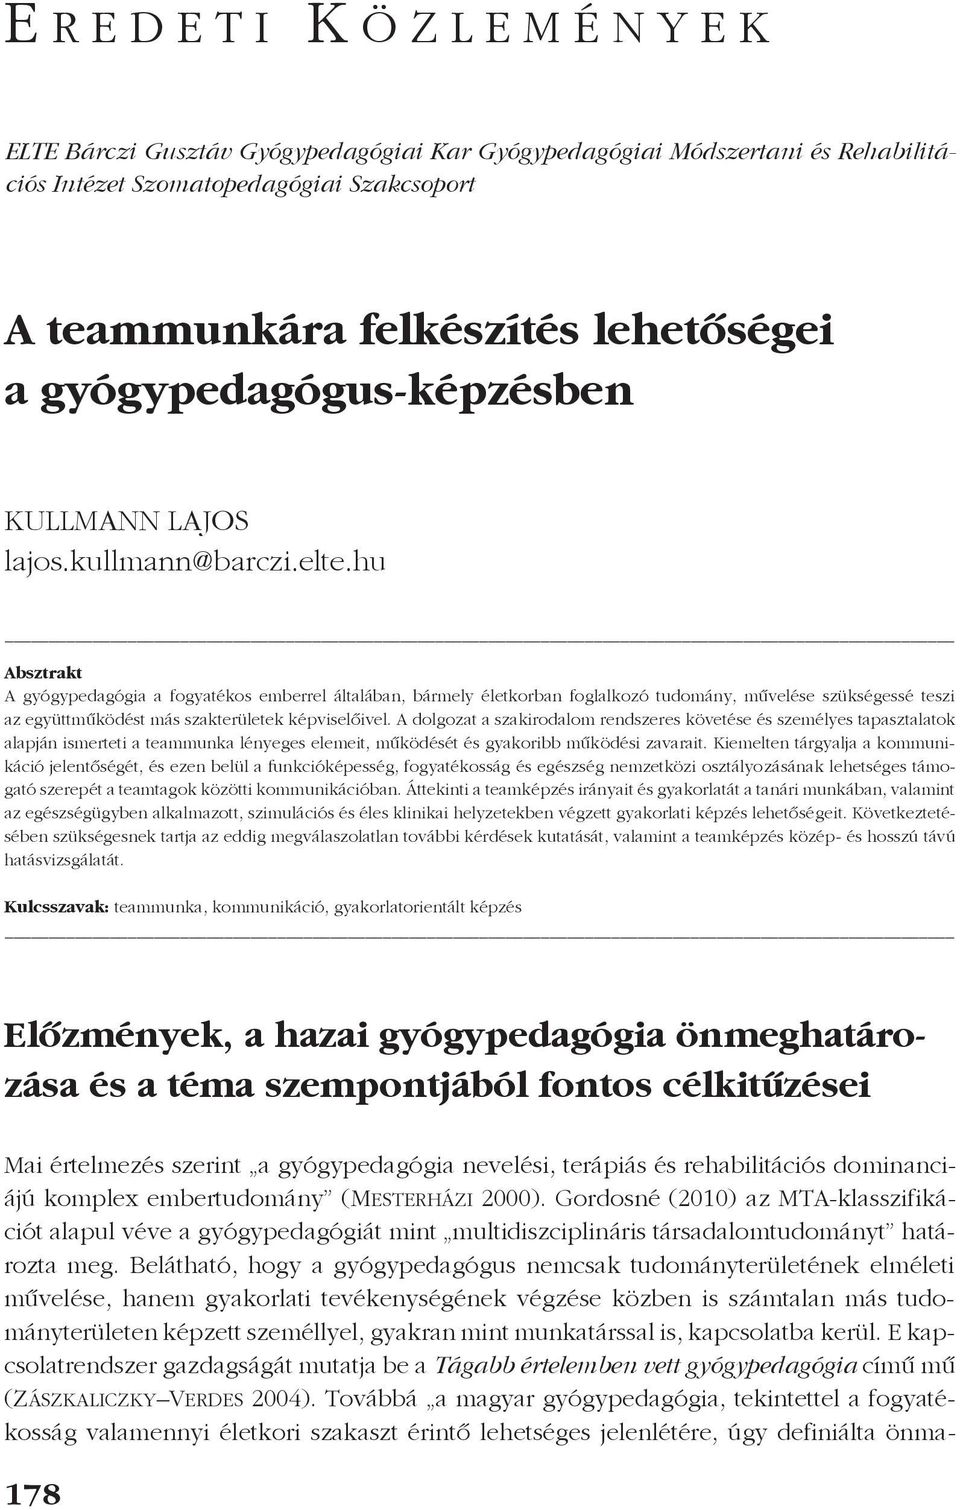 GYÓGYPEDAGÓGIAI SZEMLE A Magyar Gyógypedagógusok Egyesületének folyóirata -  PDF Ingyenes letöltés